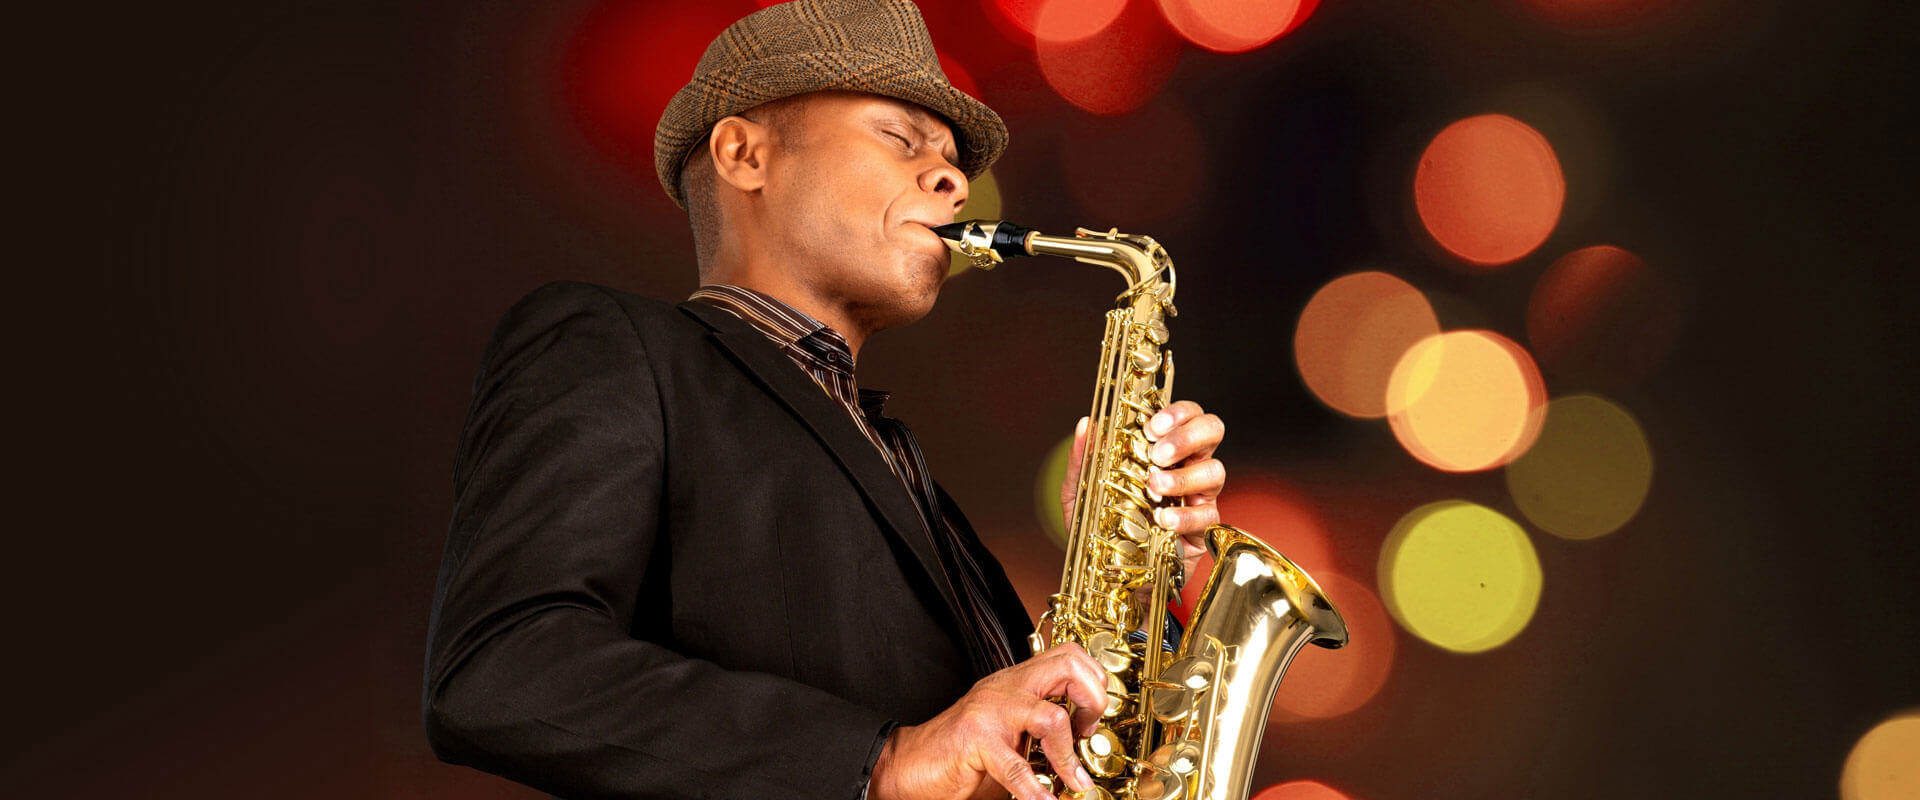 Saxophone Lessons Braddock, PA